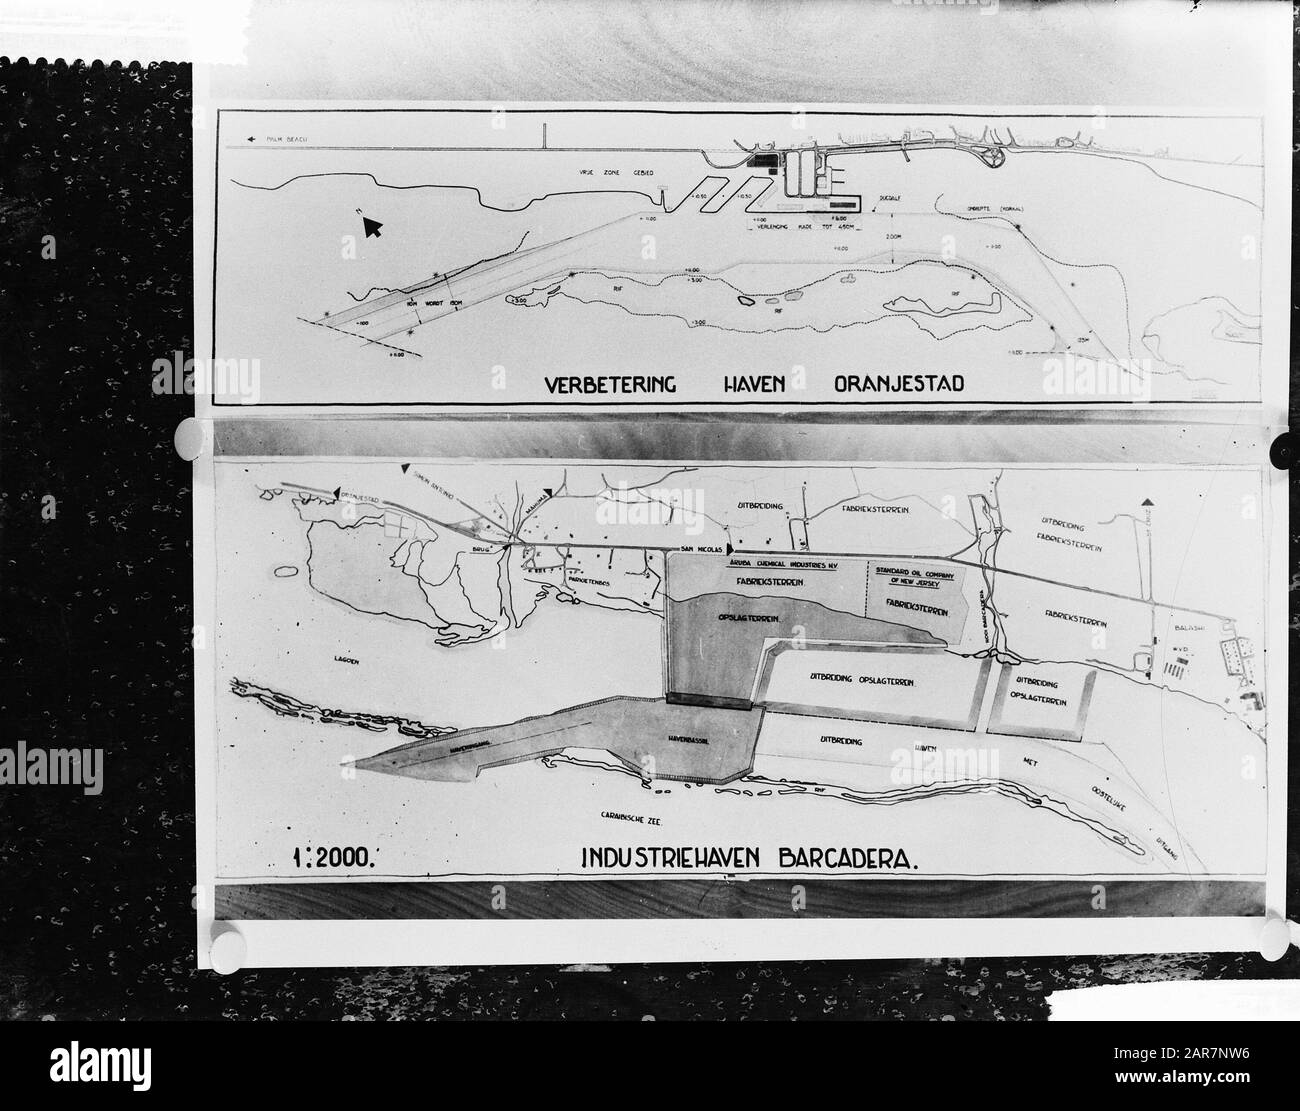 Mappa del porto industriale Barcadera Data: 17 aprile 1961 Località: Aruba, Antille Olandesi Parole Chiave: Disegni, documenti, porti, mappe Foto Stock